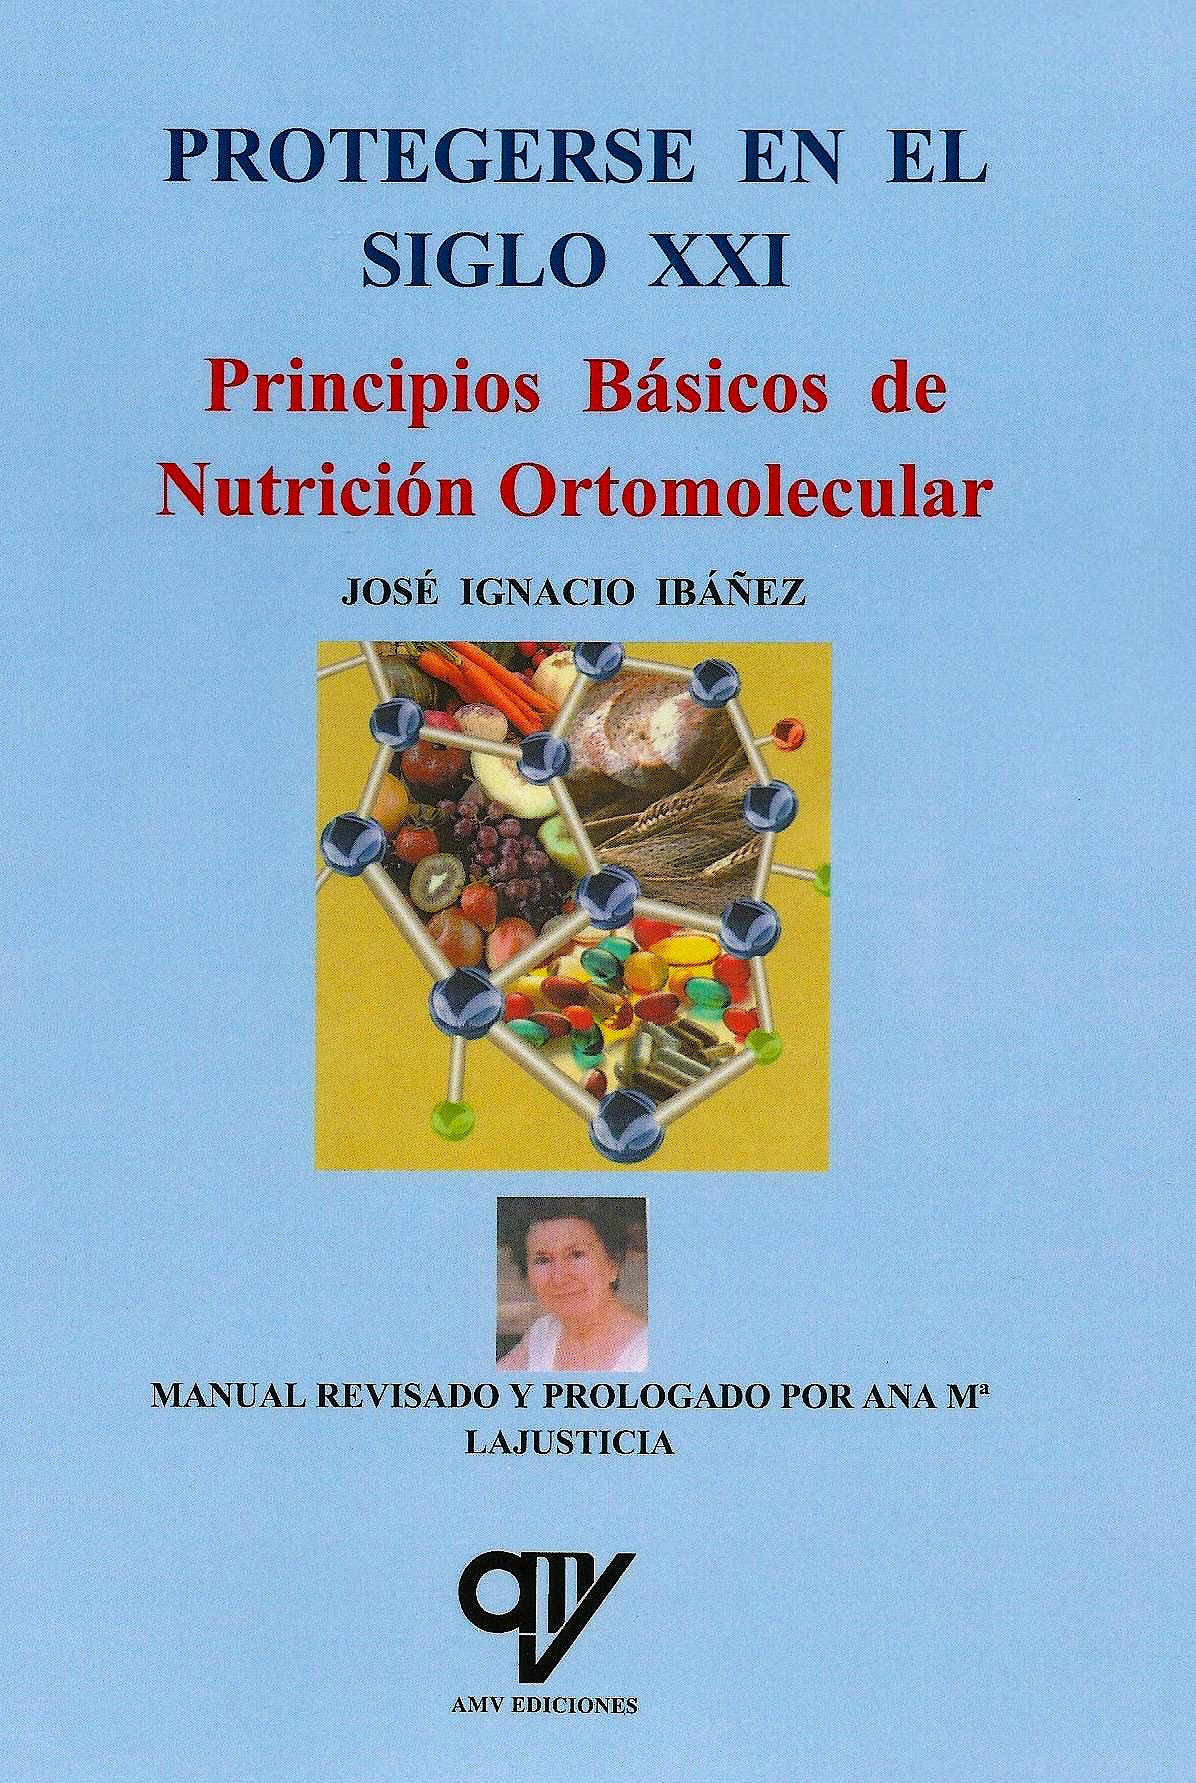 Principios Básicos de Nutrición Ortomolecular